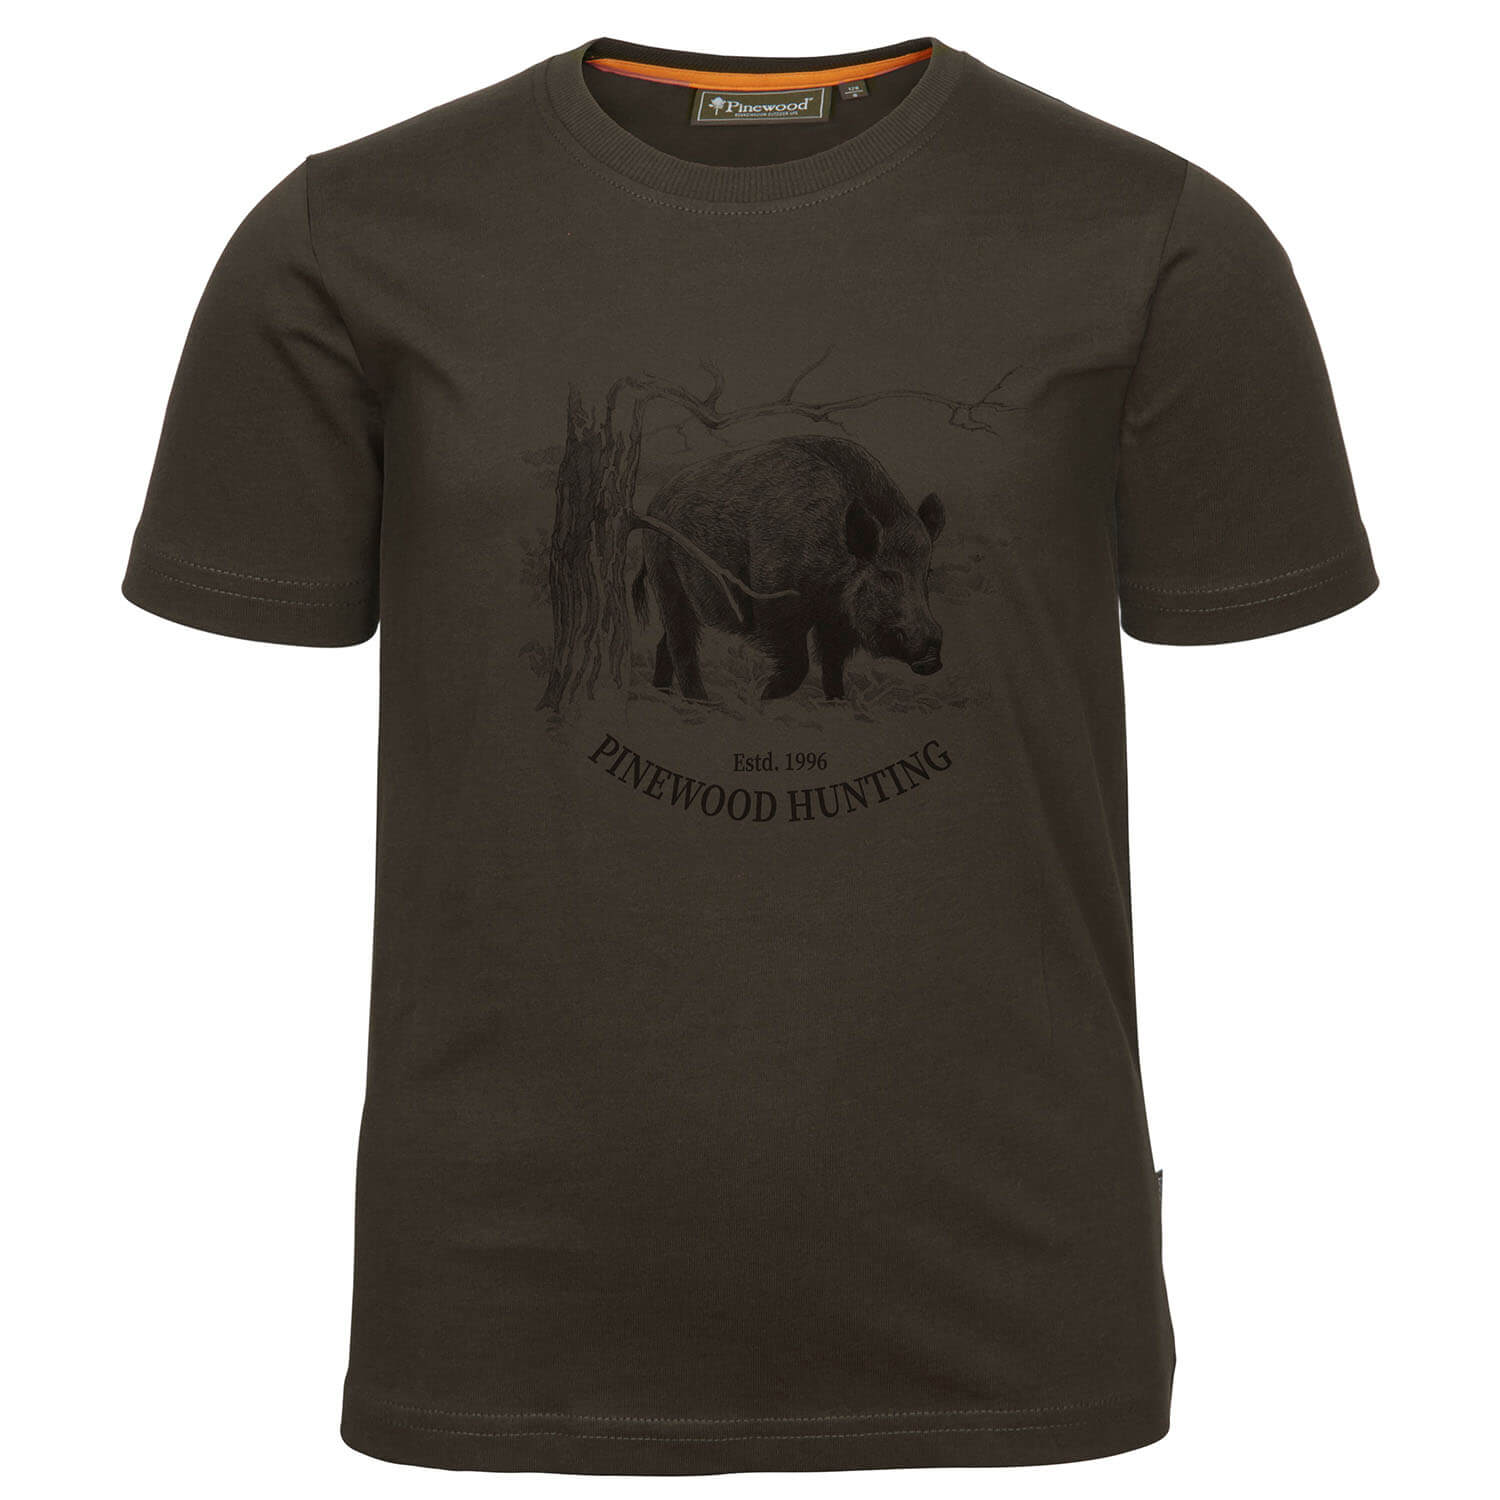  Pinewood T-shirt Wild Zwijn Kinderen